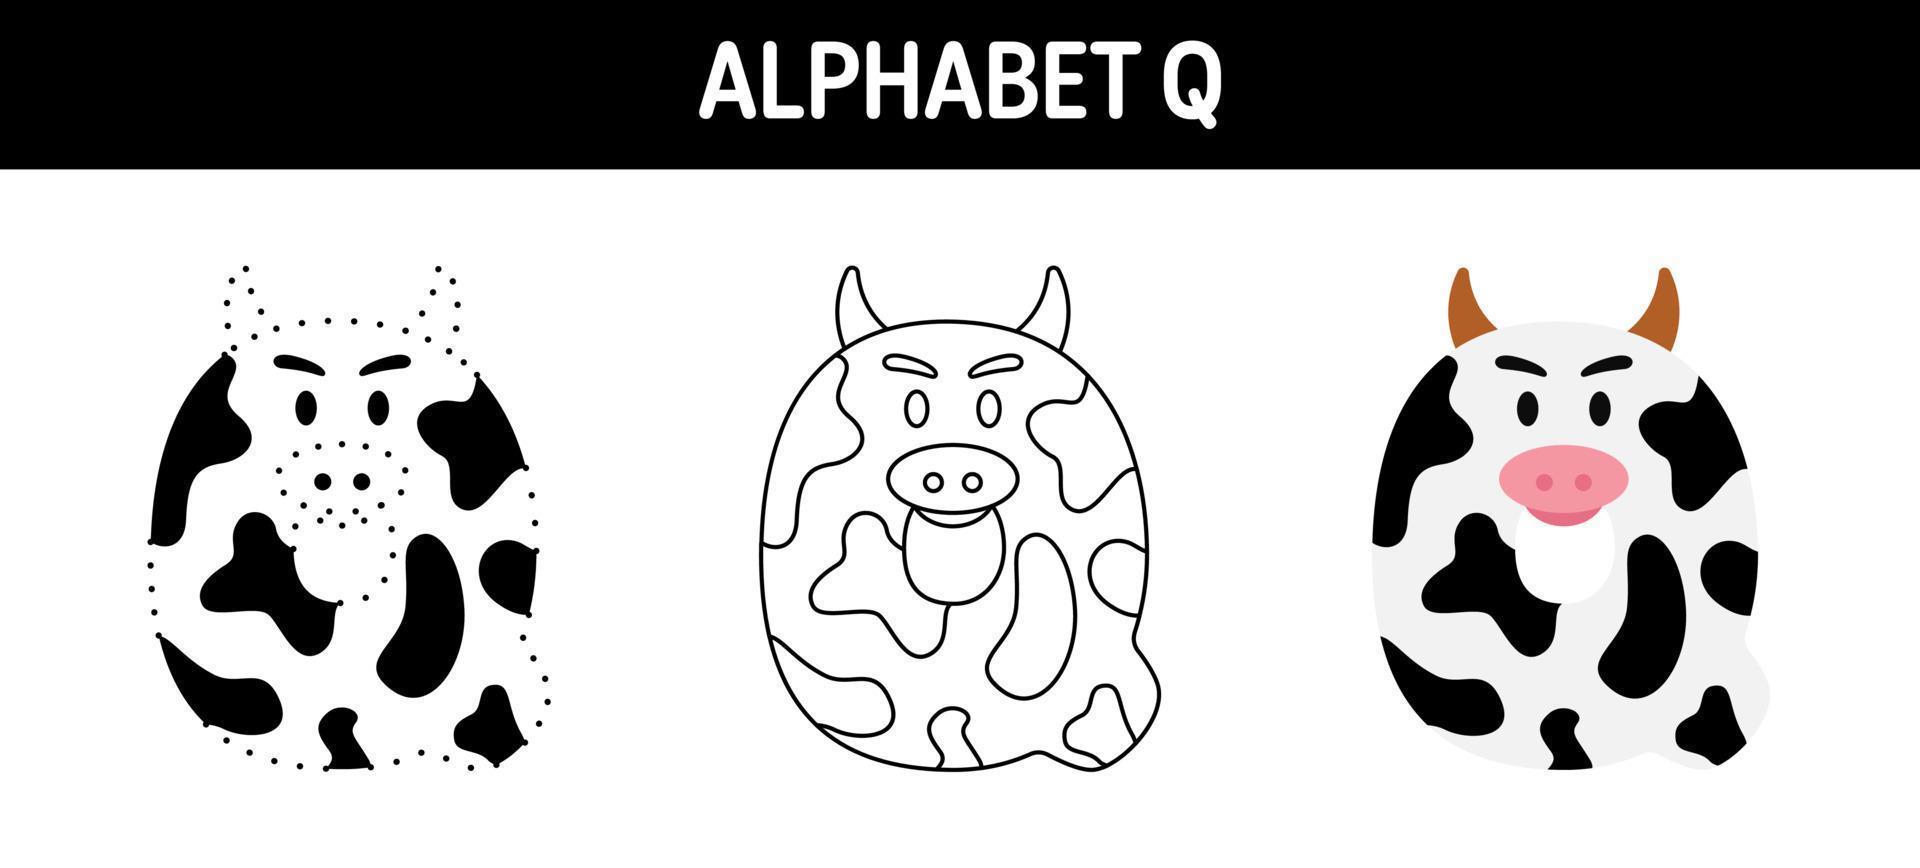 Arbeitsblatt zum nachzeichnen und ausmalen von alphabet q für kinder vektor